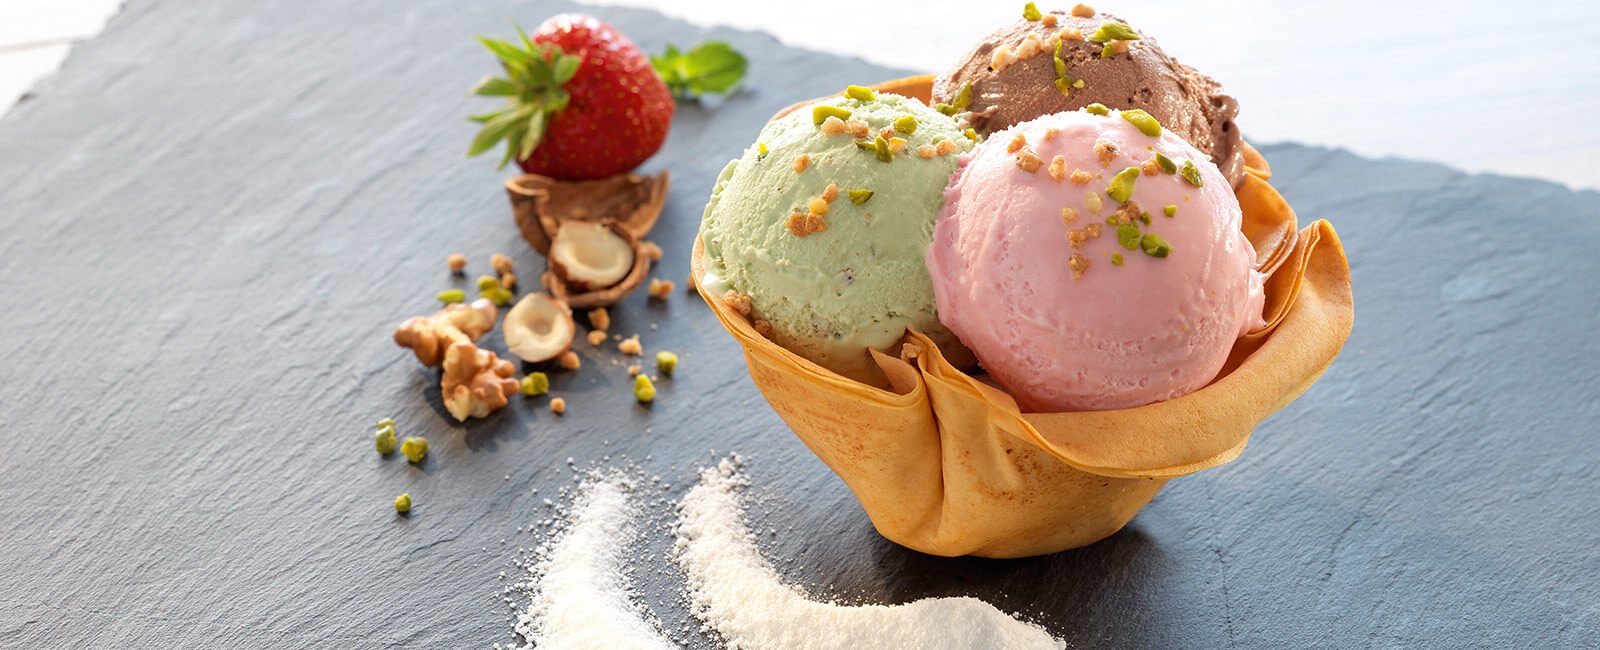 dmk-group-expands-ice-cream-portfolio